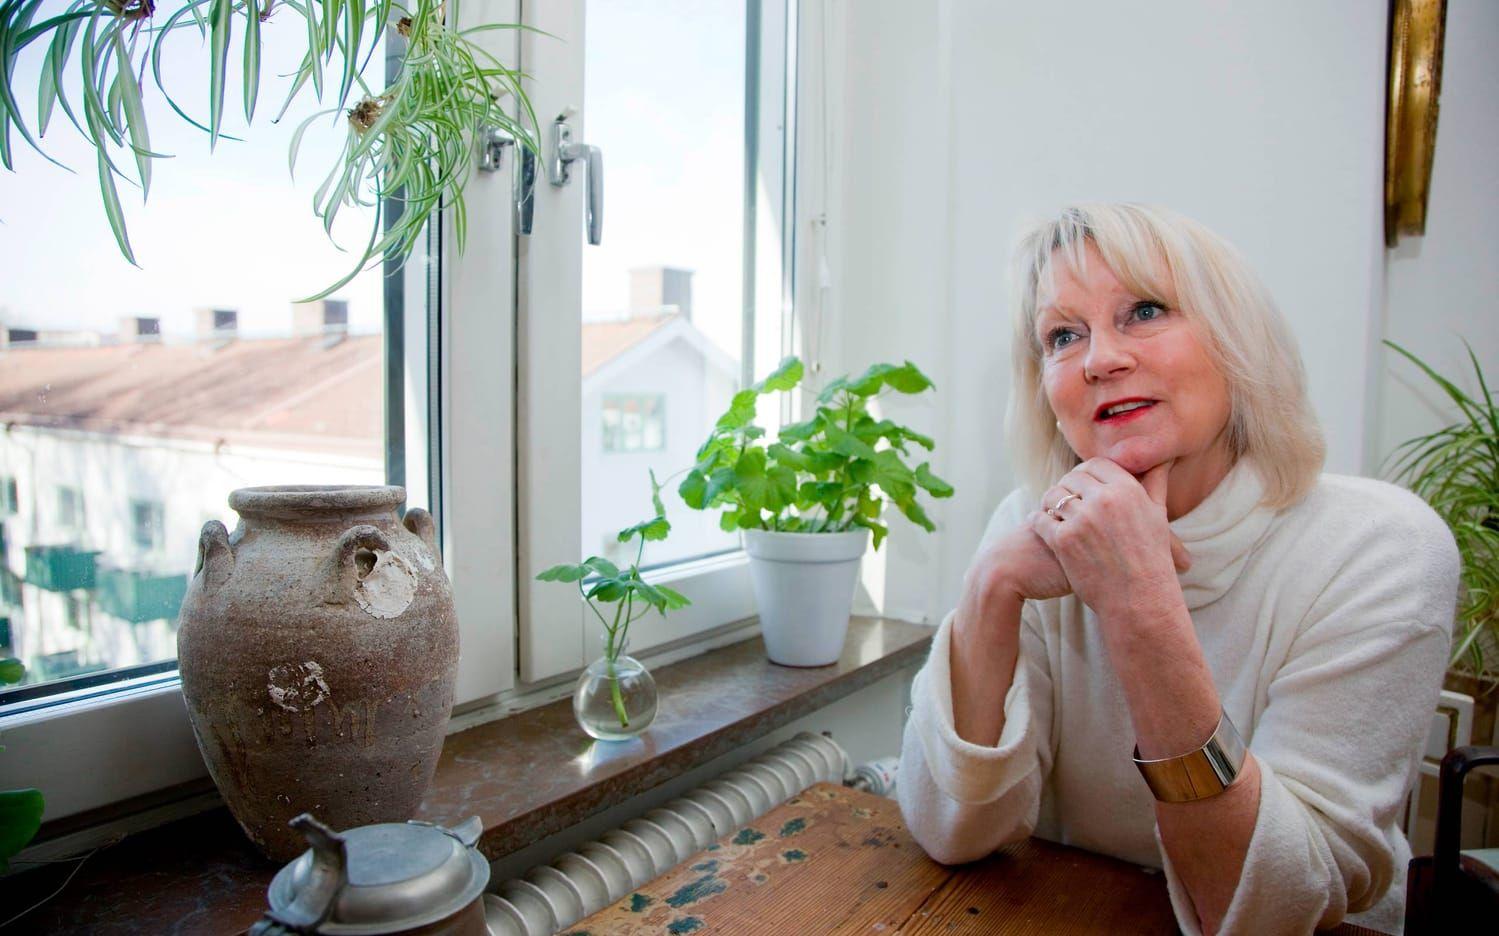 Efter drygt 20 år utomlands – i Spanien, Turkiet, Singapore, Thailand och Malaysia – har 60-åriga Susanne Rapp återvänt hem till Kålltorp och Göteborg. Bild: Stéphane Maréchal